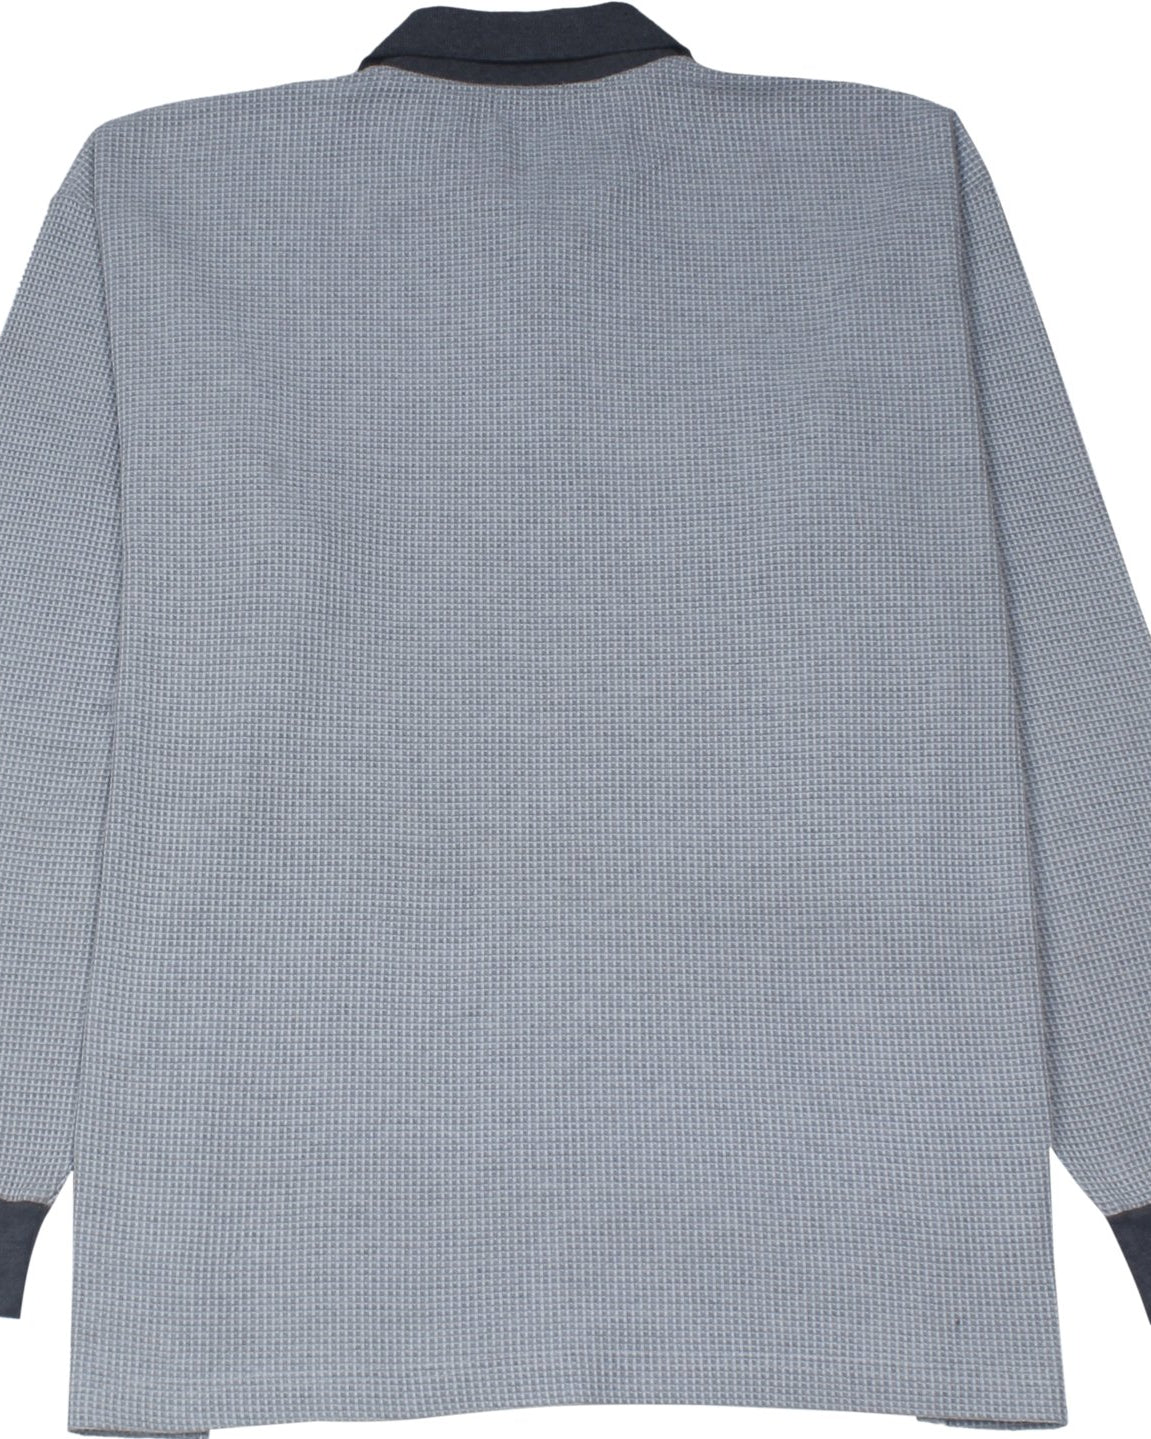 Calvin Klein grau Polo Shirt - Peeces